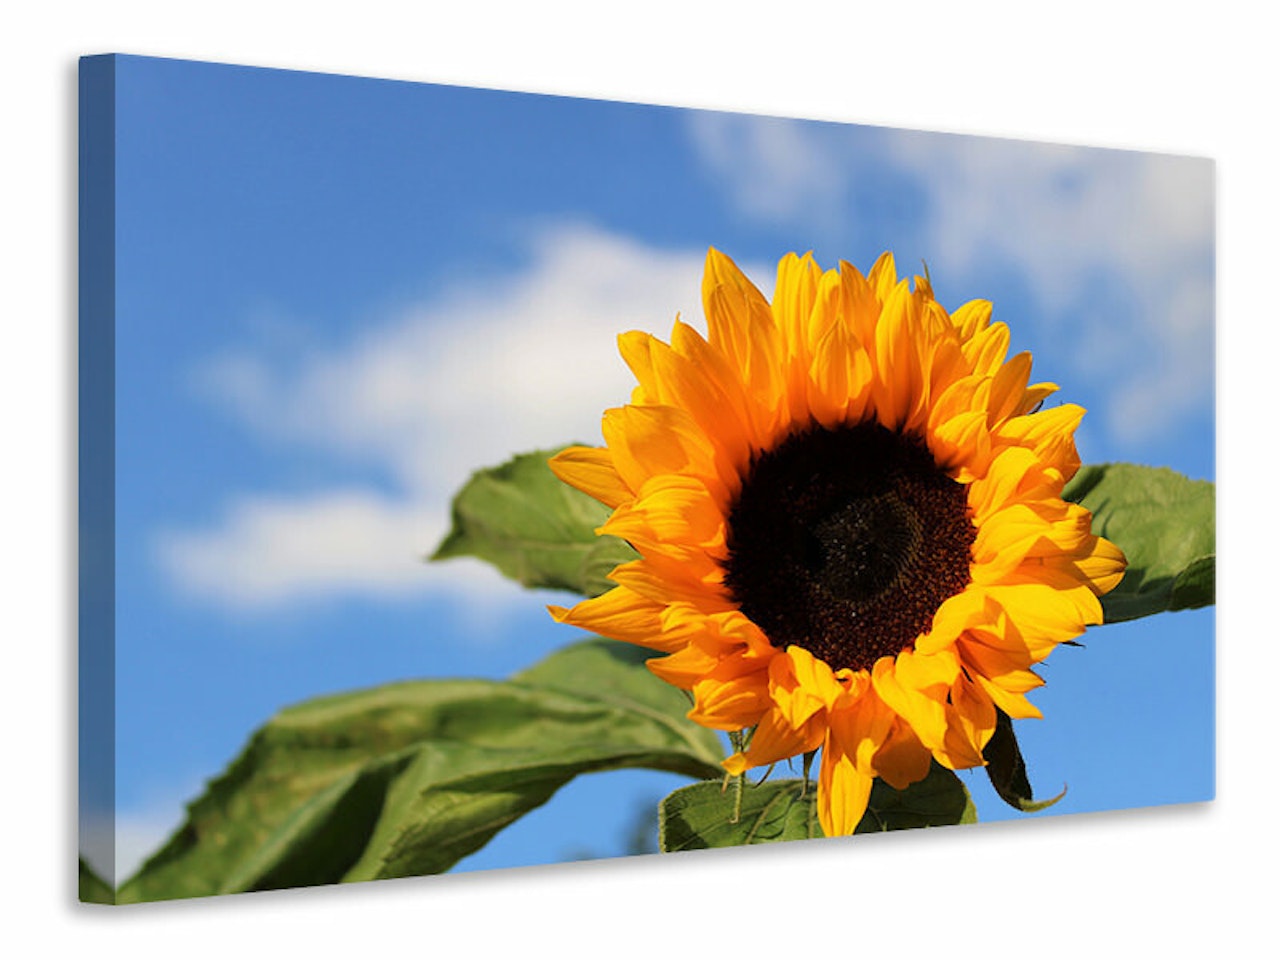 Ljuddämpande tavla - sunflower in bloom